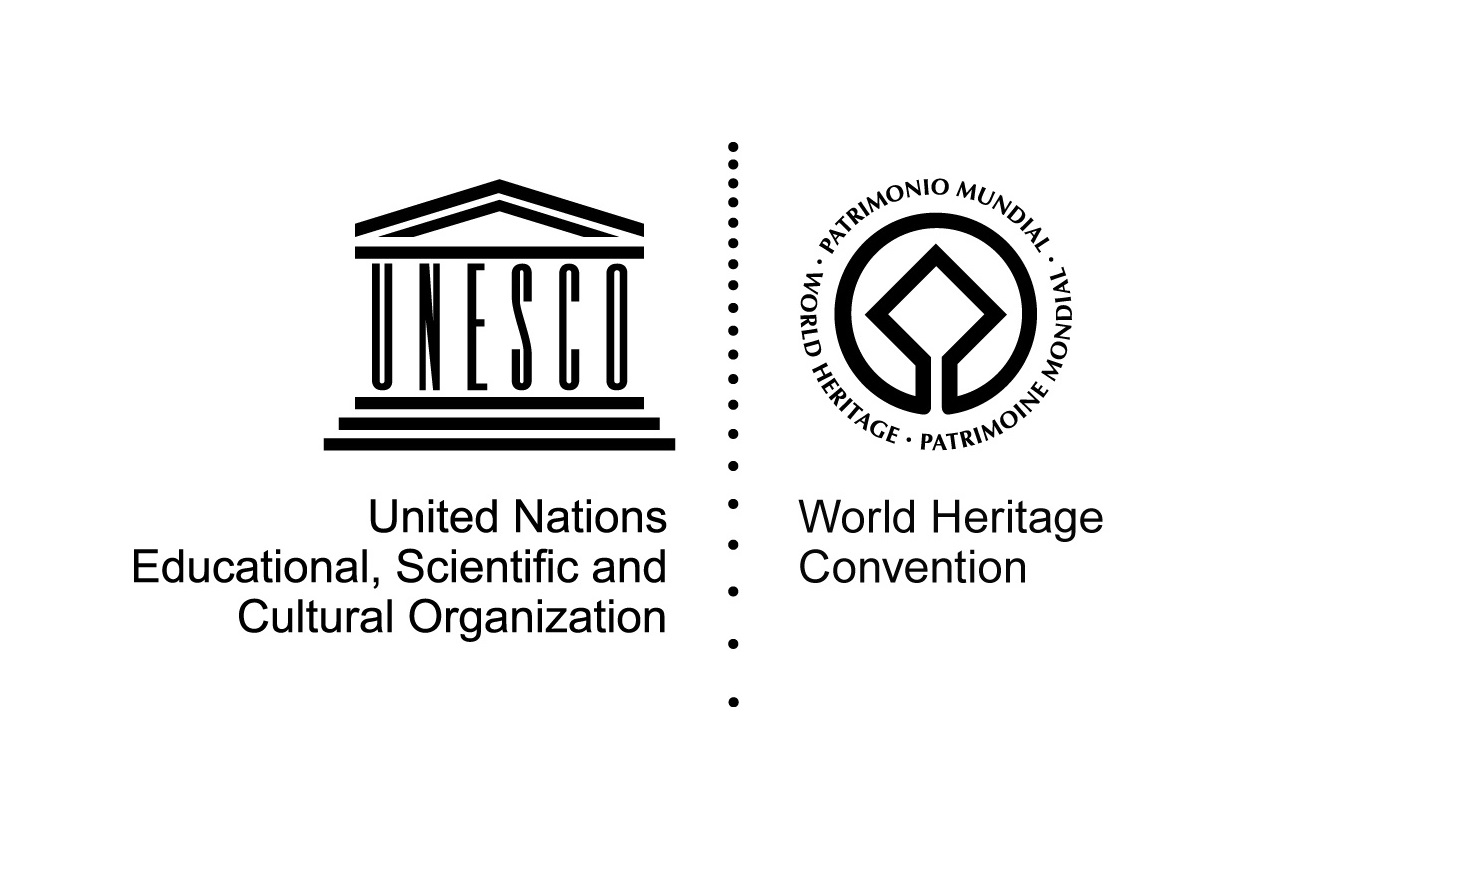 Whc unesco org. Эмблема Всемирного наследия. ЮНЕСКО эмблема. Знак Всемирного наследия ЮНЕСКО. Символ ЮНЕСКО.